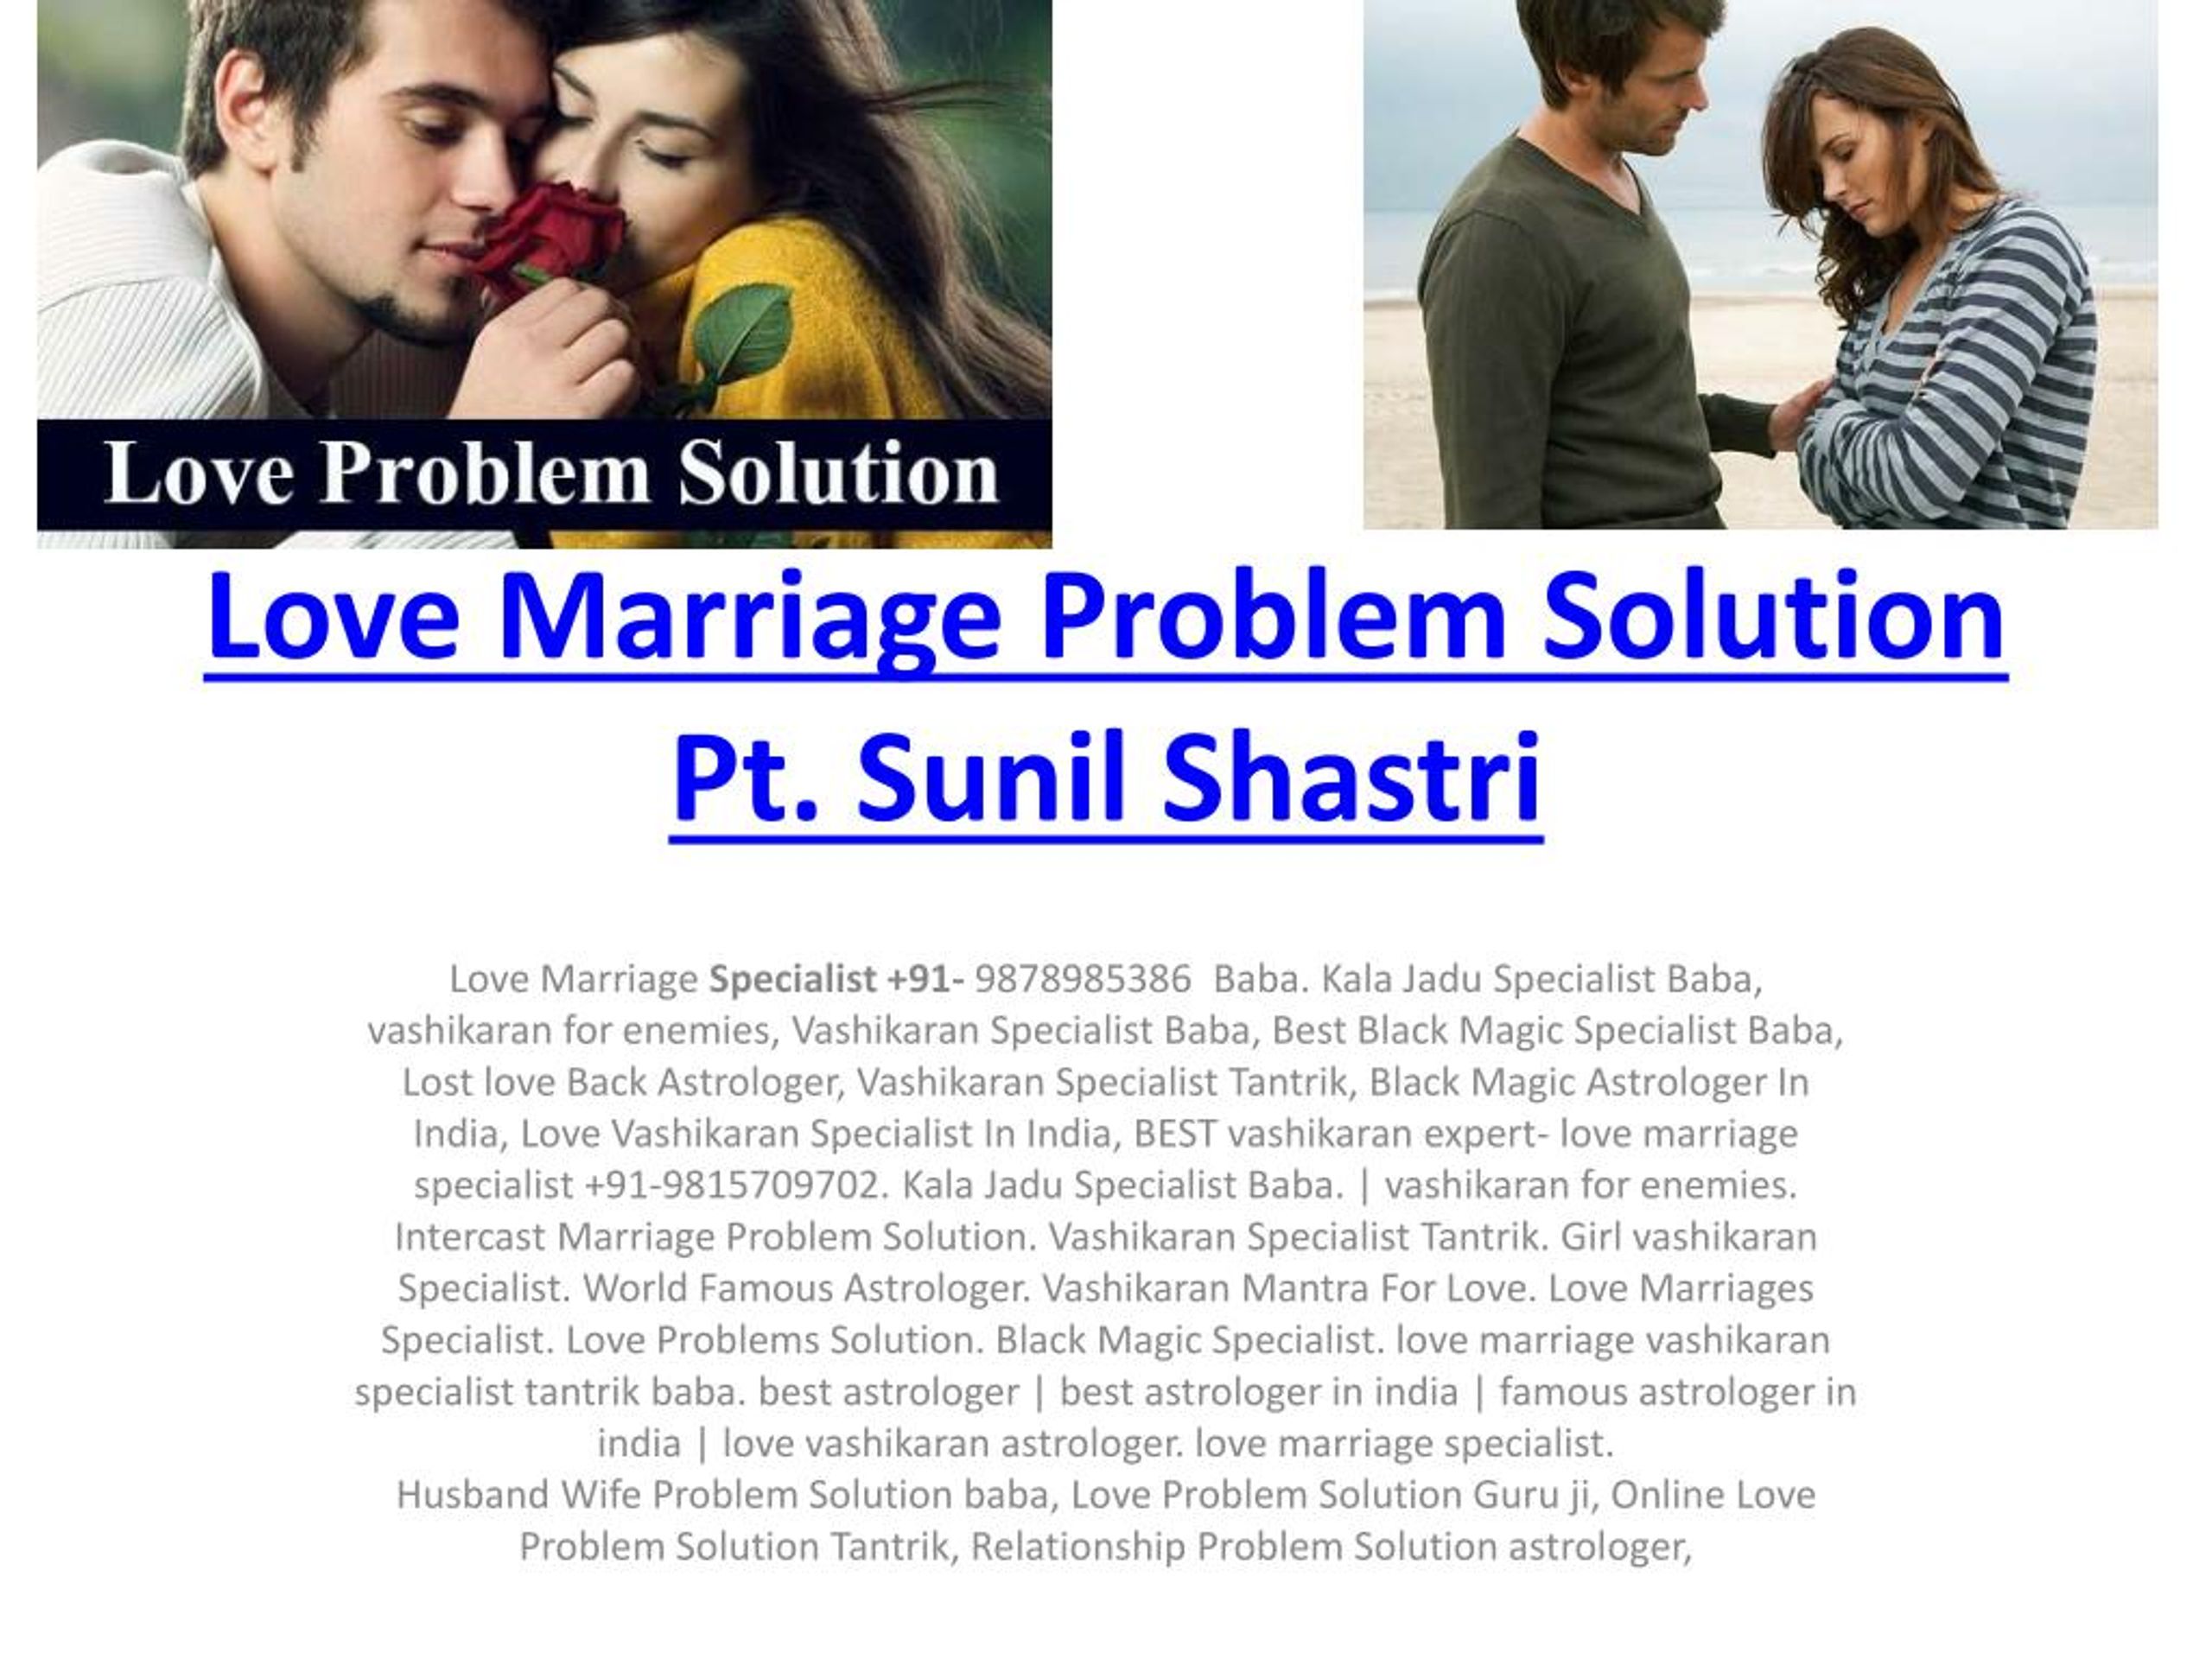 love marriage problem solution in jalandhar